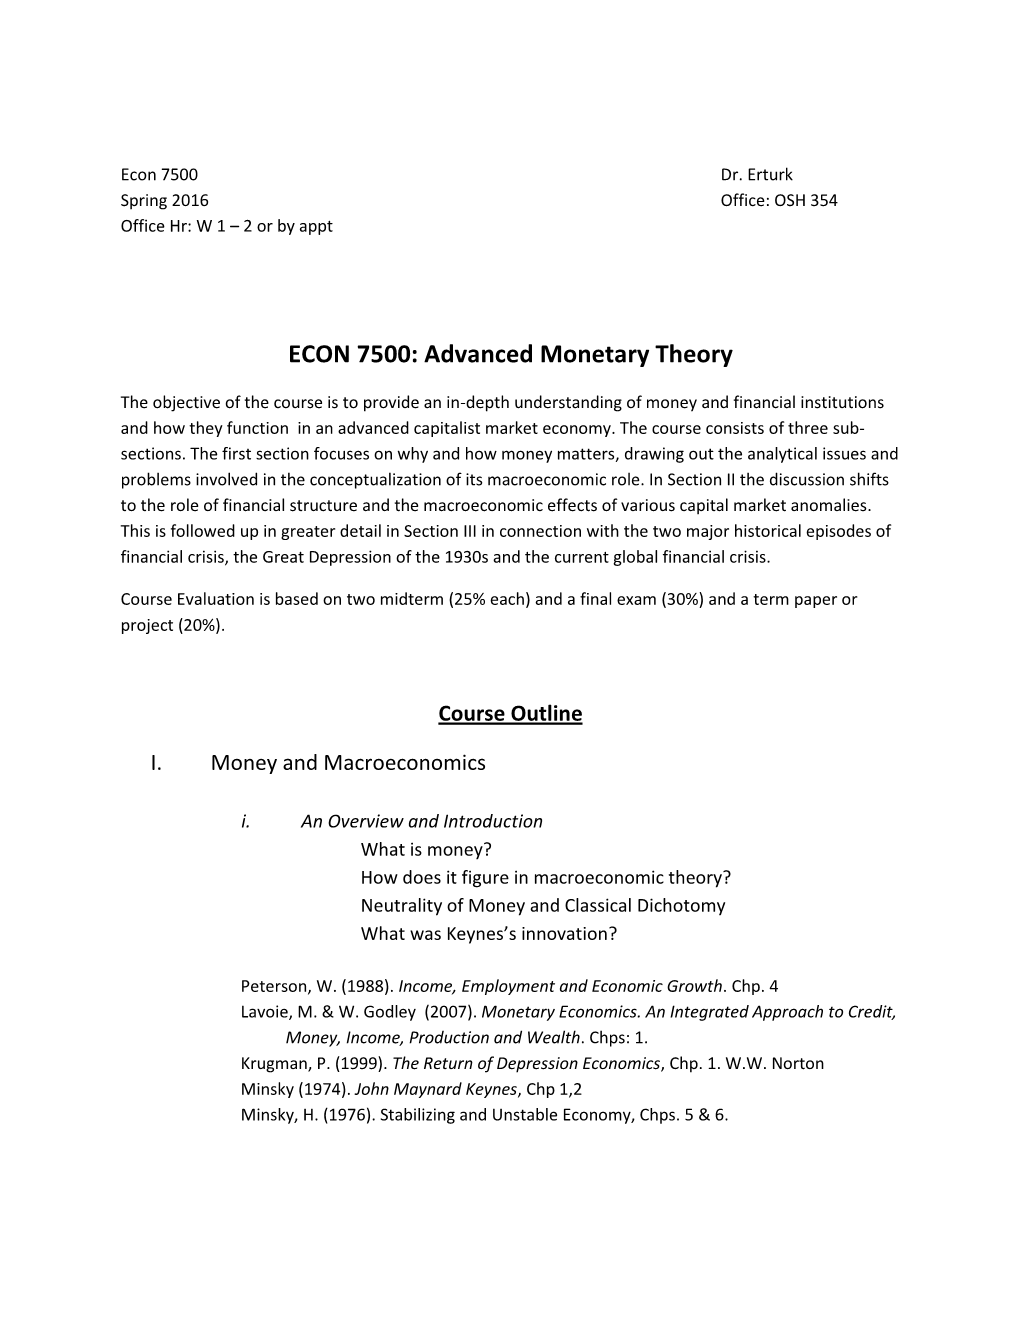 ECON 7500: Advanced Monetary Theory